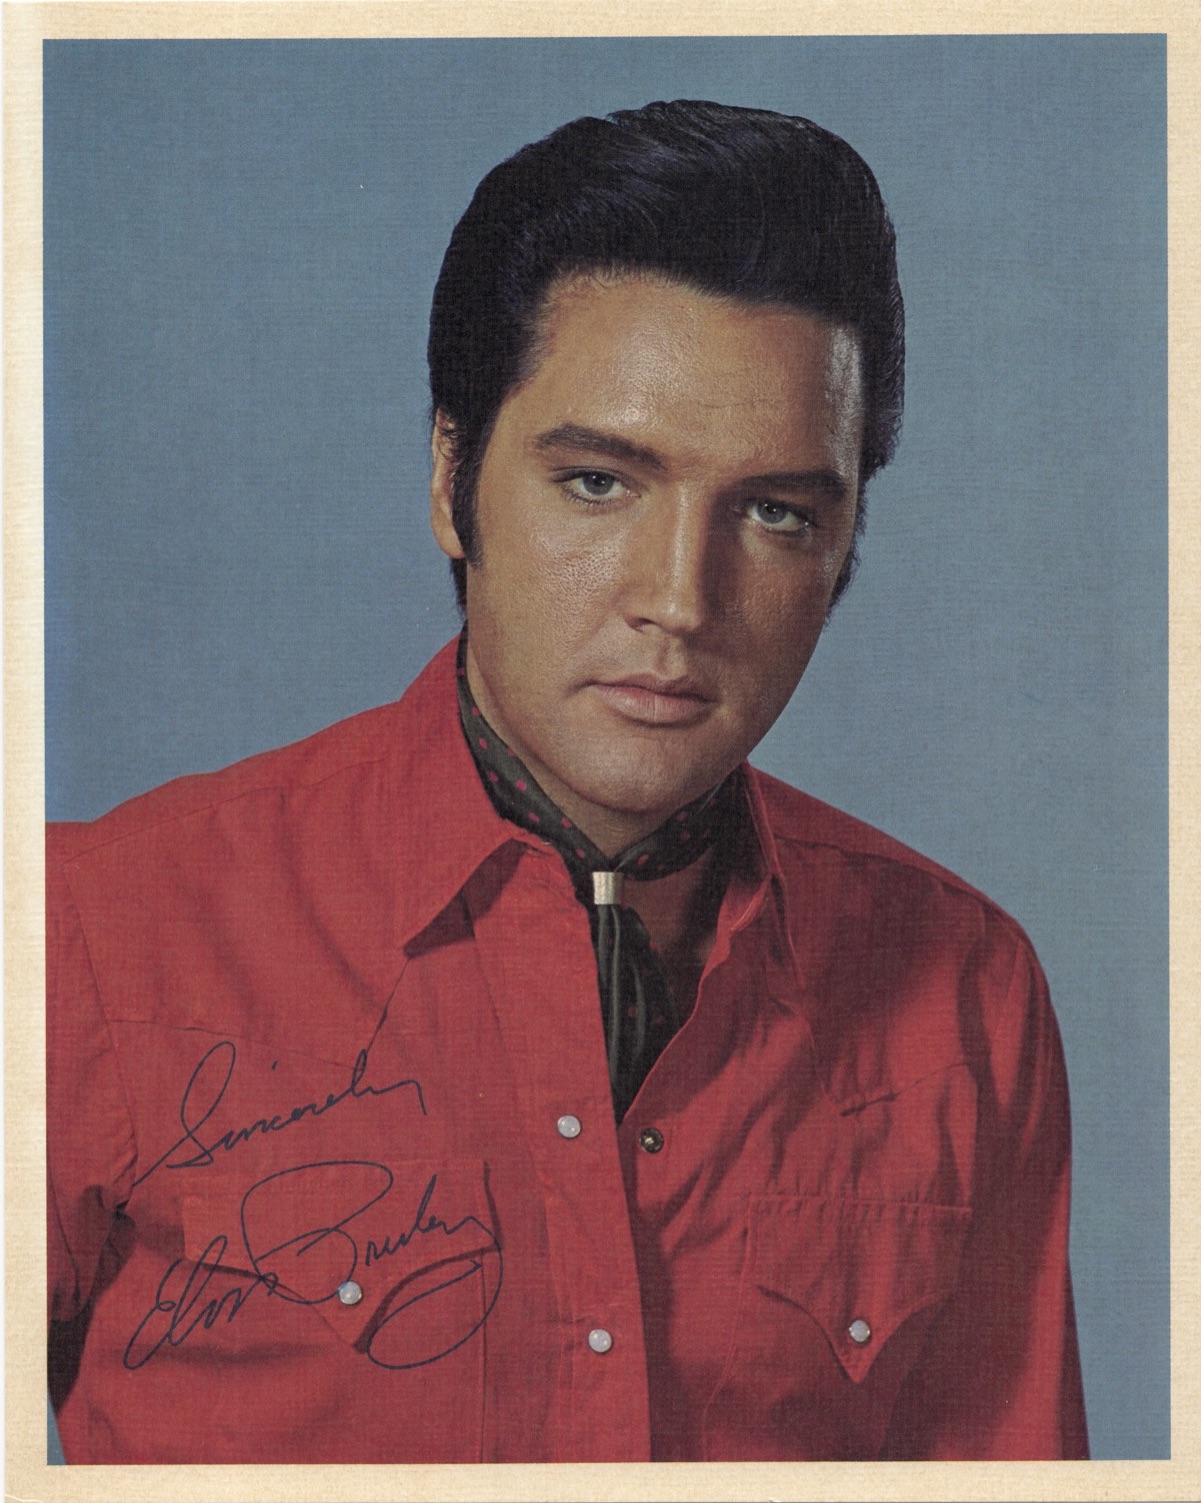 ’69 From Elvis In Memphis